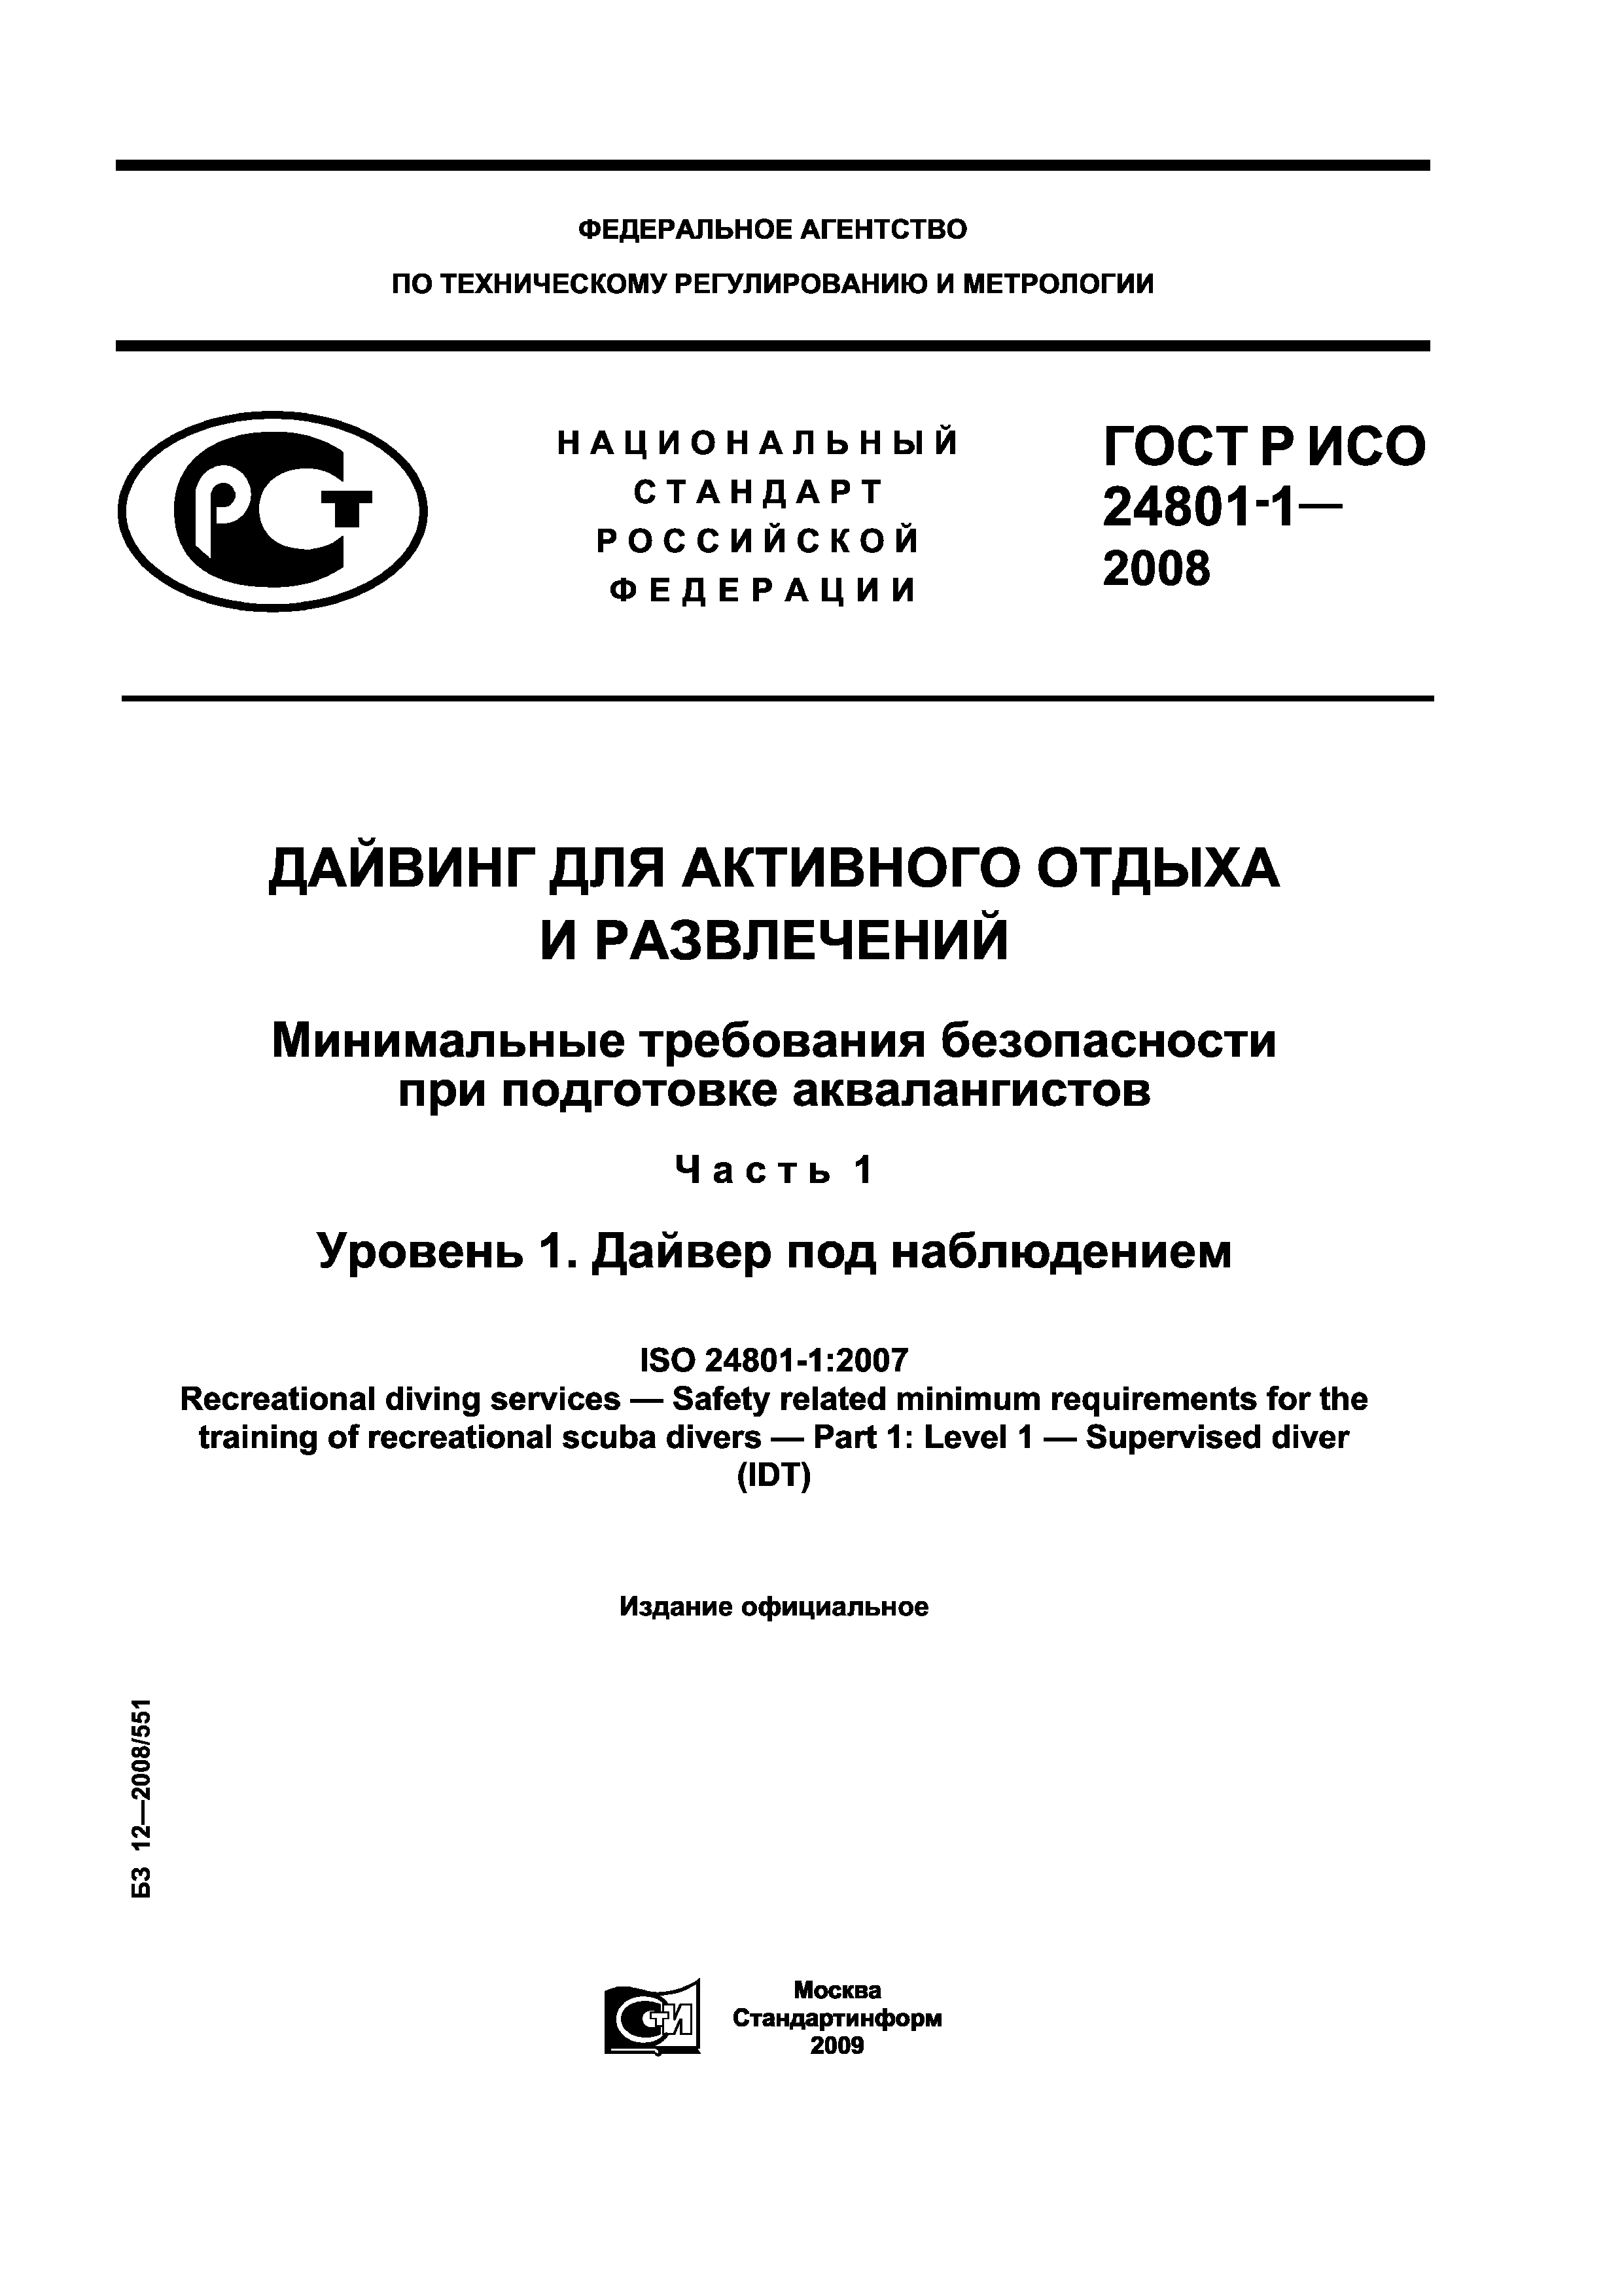 ГОСТ Р ИСО 24801-1-2008